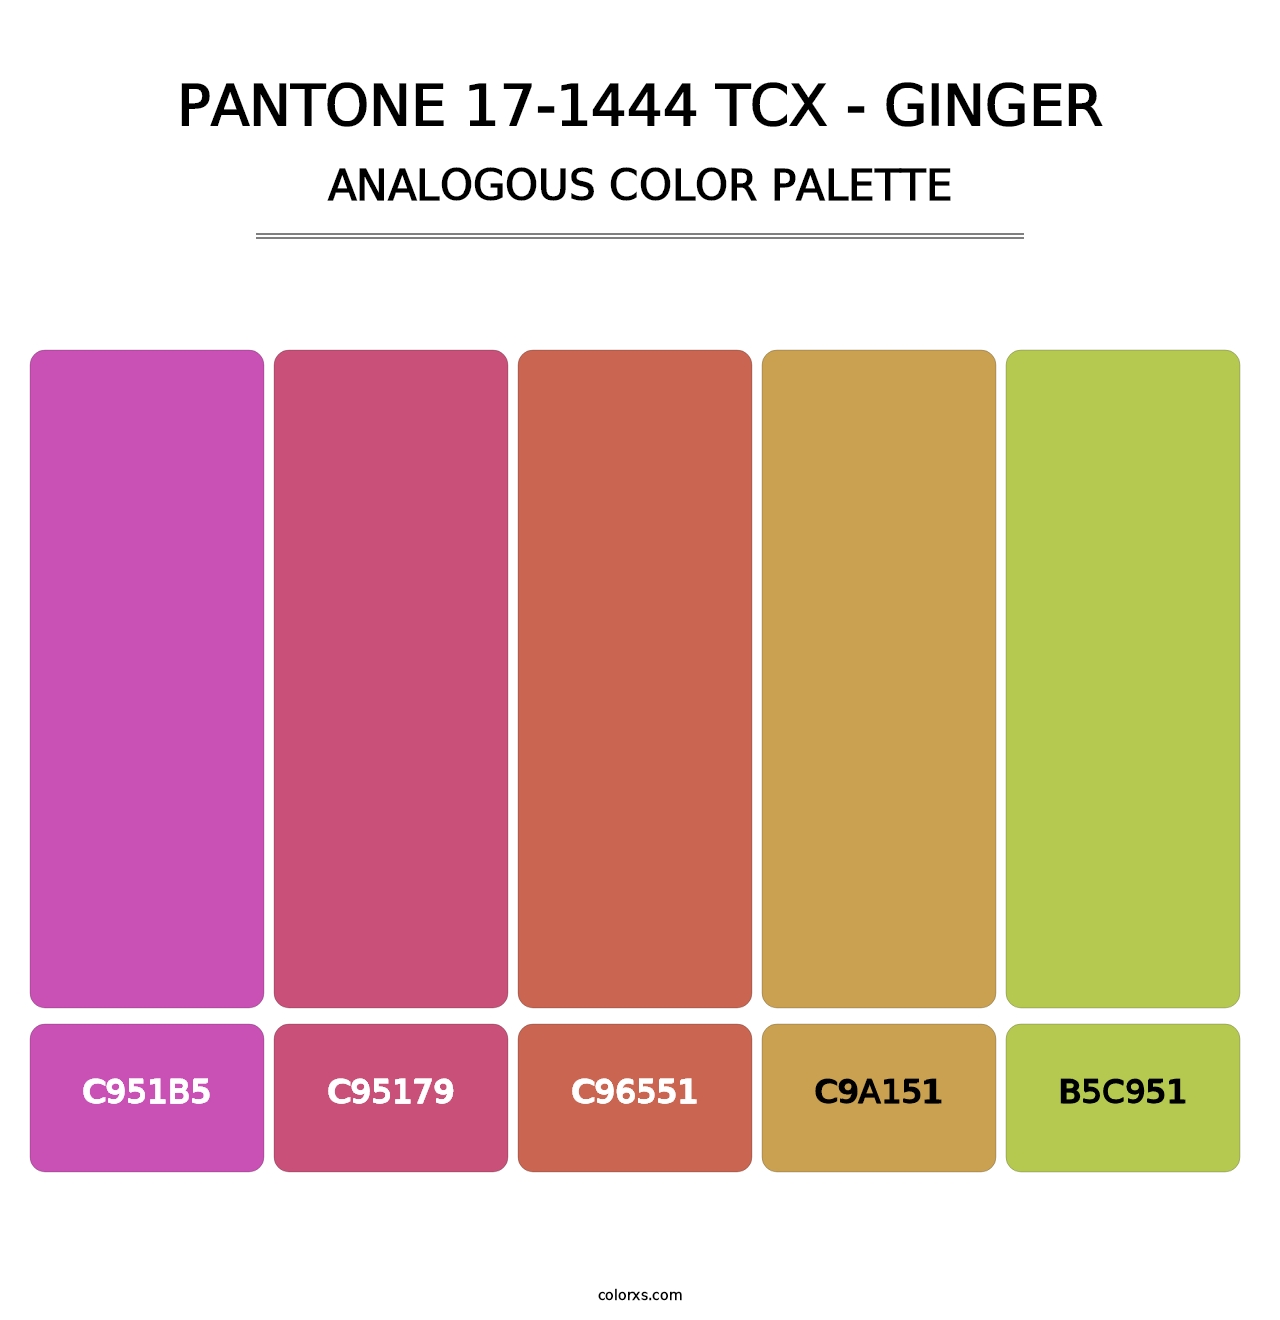 PANTONE 17-1444 TCX - Ginger - Analogous Color Palette